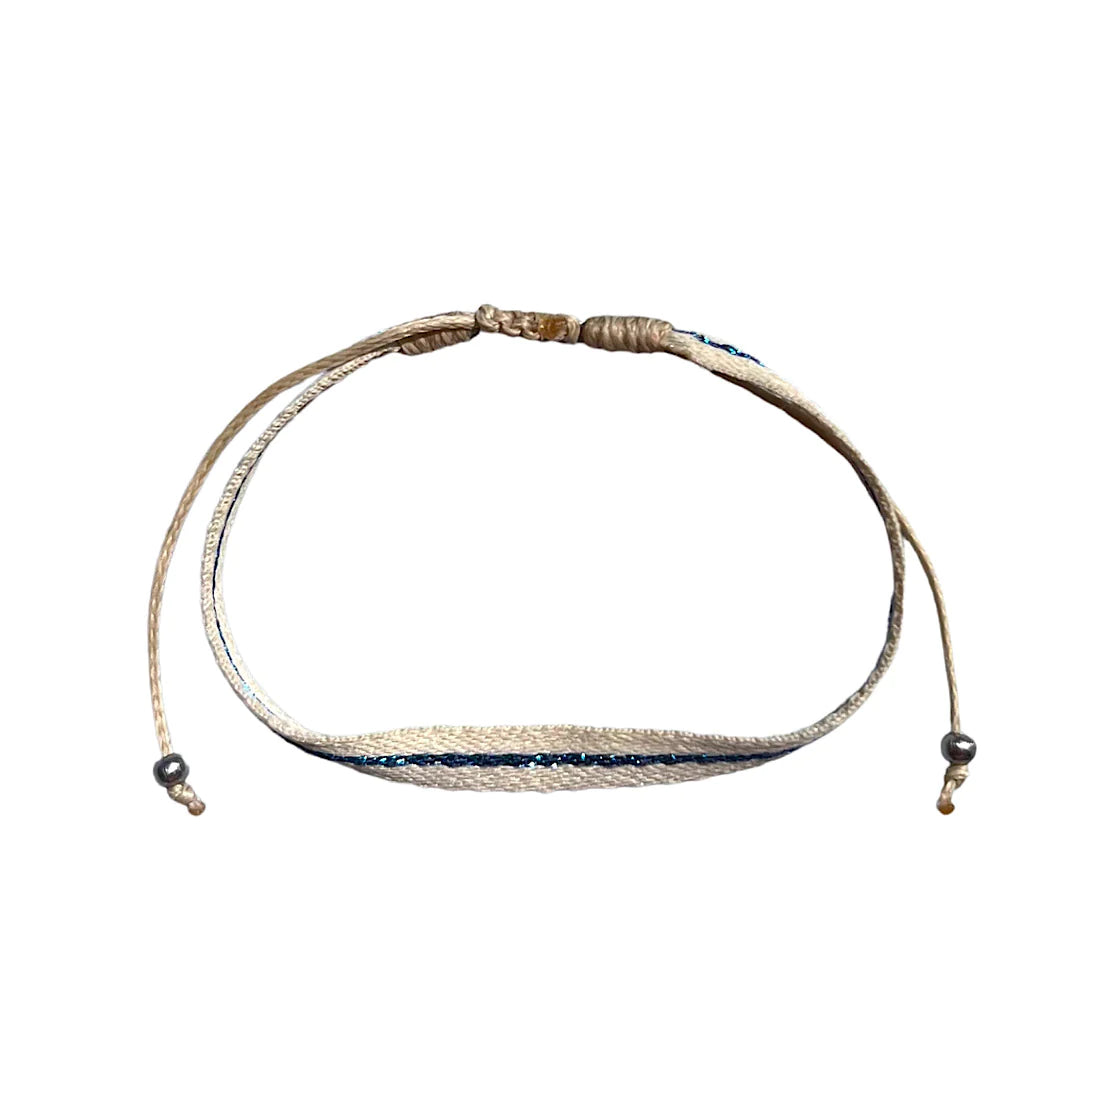 One fabric strand of a blue 3-strand bracelet set.